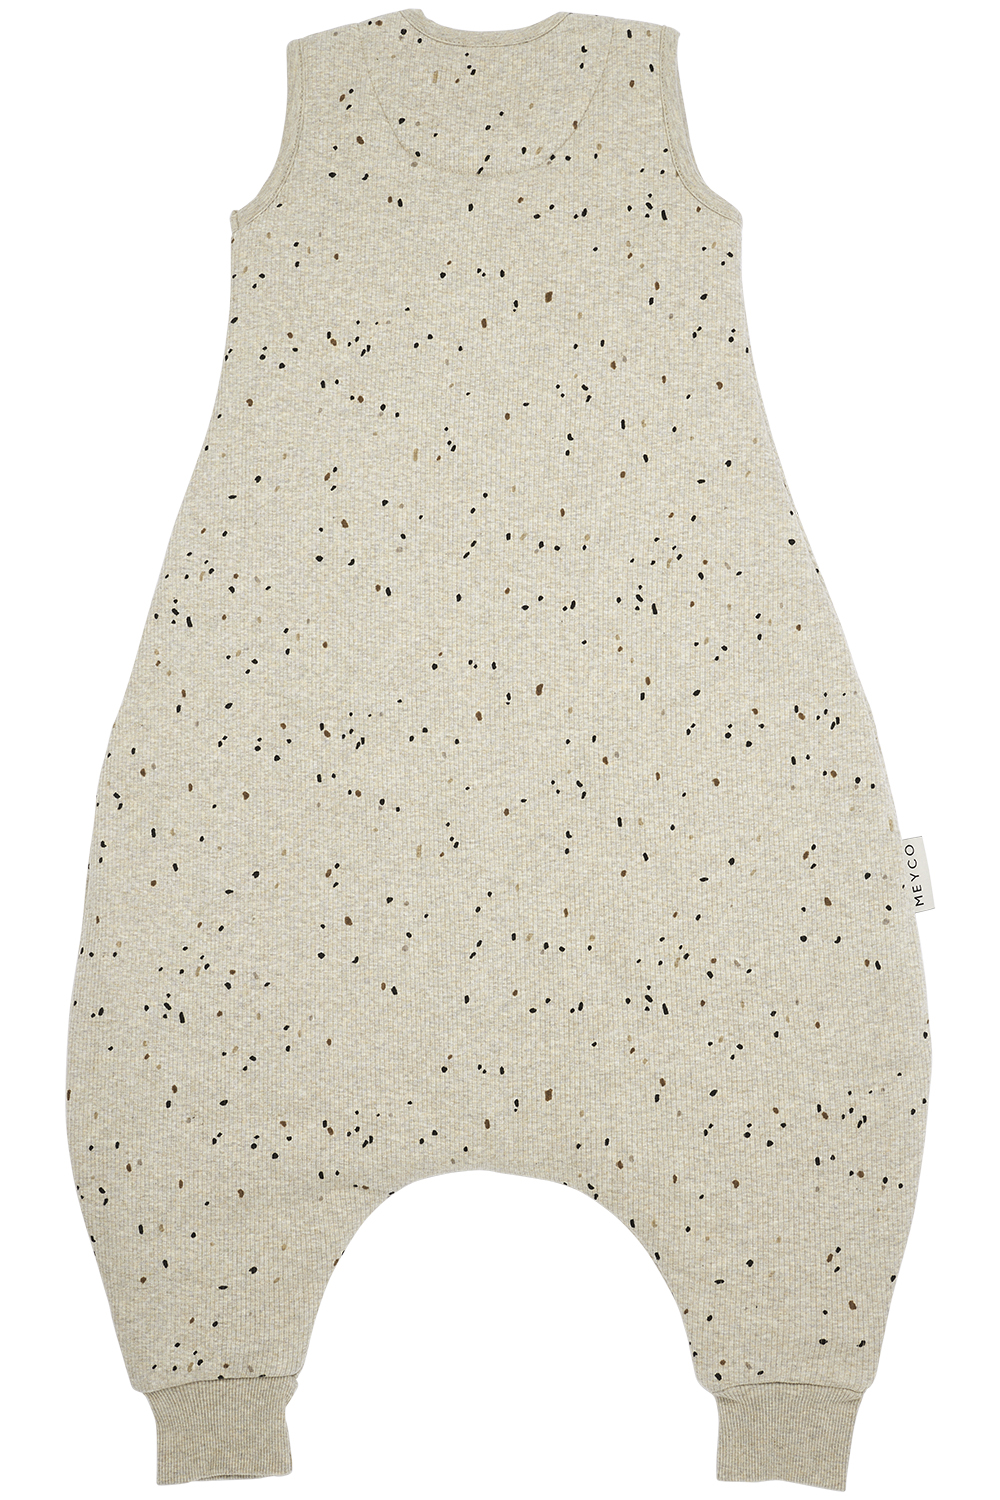 Baby winter slaapoverall jumper Rib Mini Spot - sand melange - 80cm